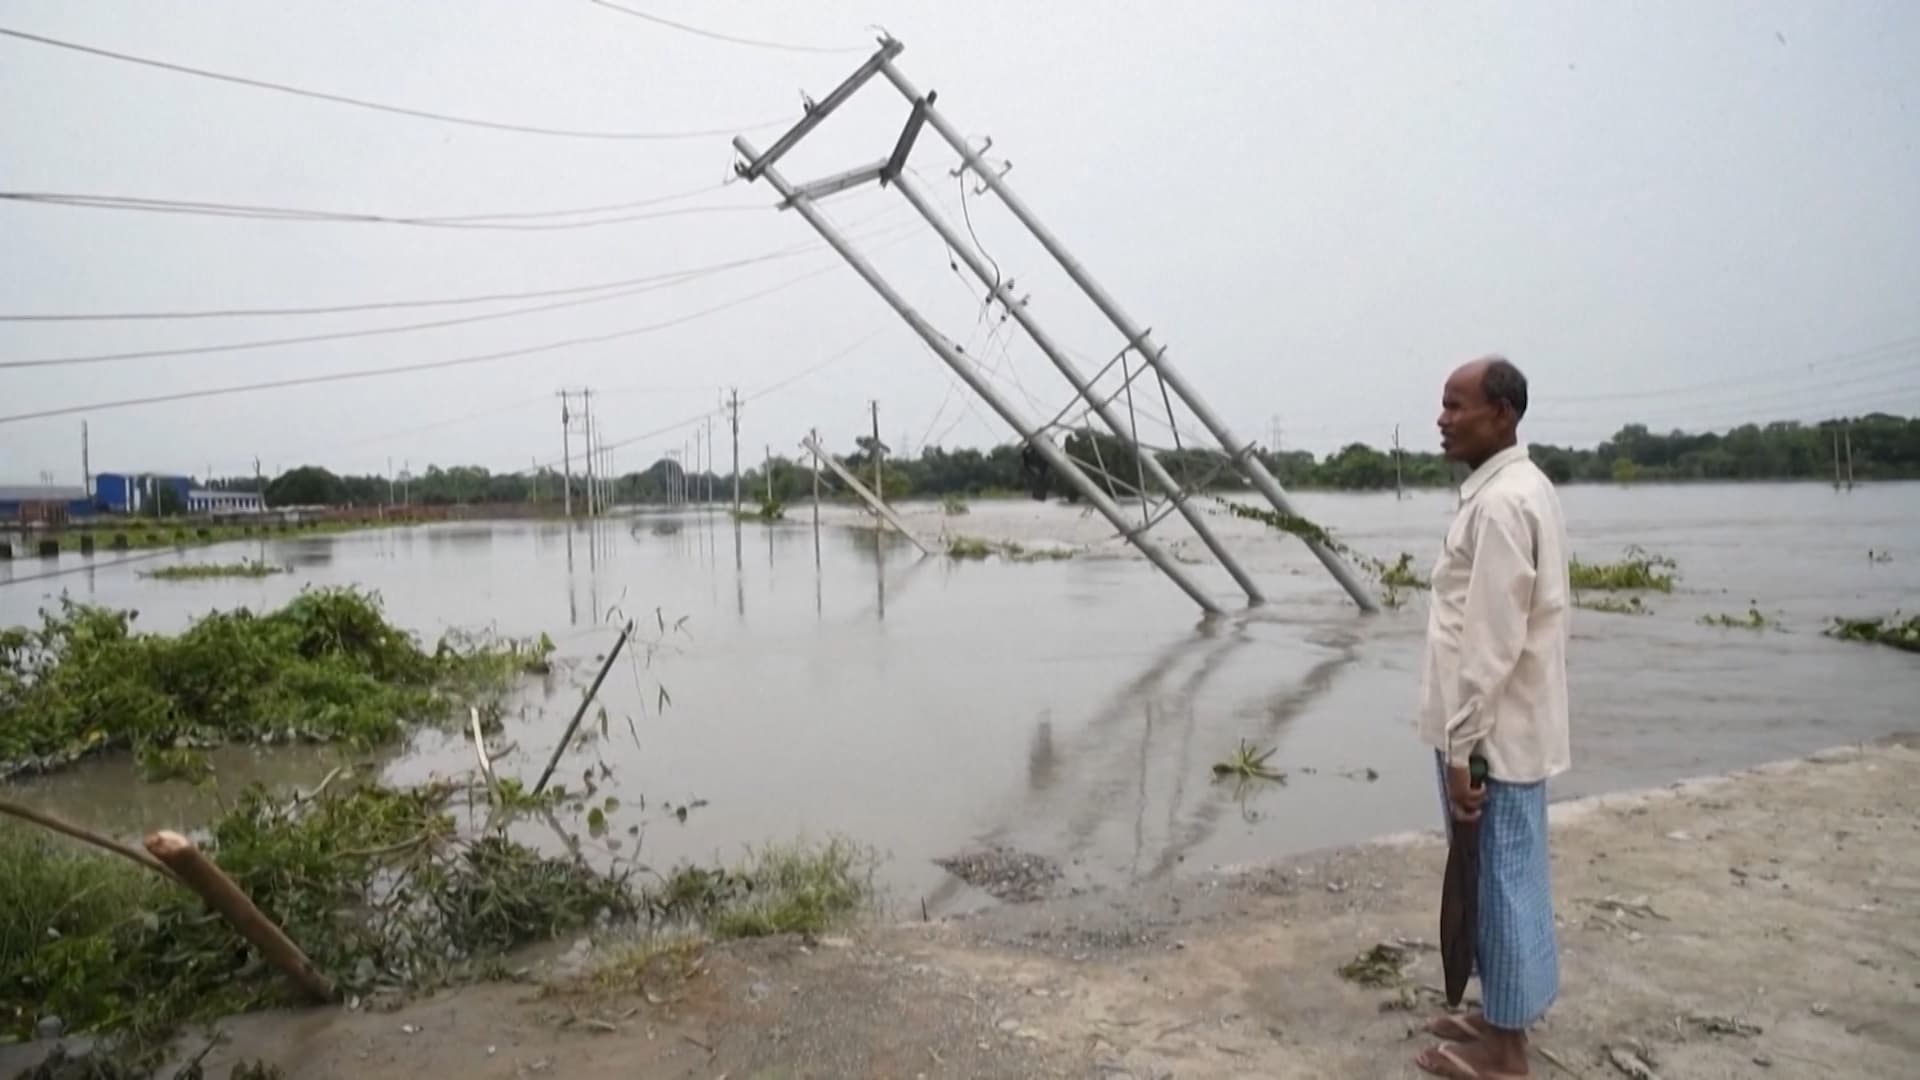 بعضهم مات صعقًا.. غرق مناطق في بنغلاديش والهند إثر فيضانات تاريخية لم تشهدها المنطقة منذ عقدين